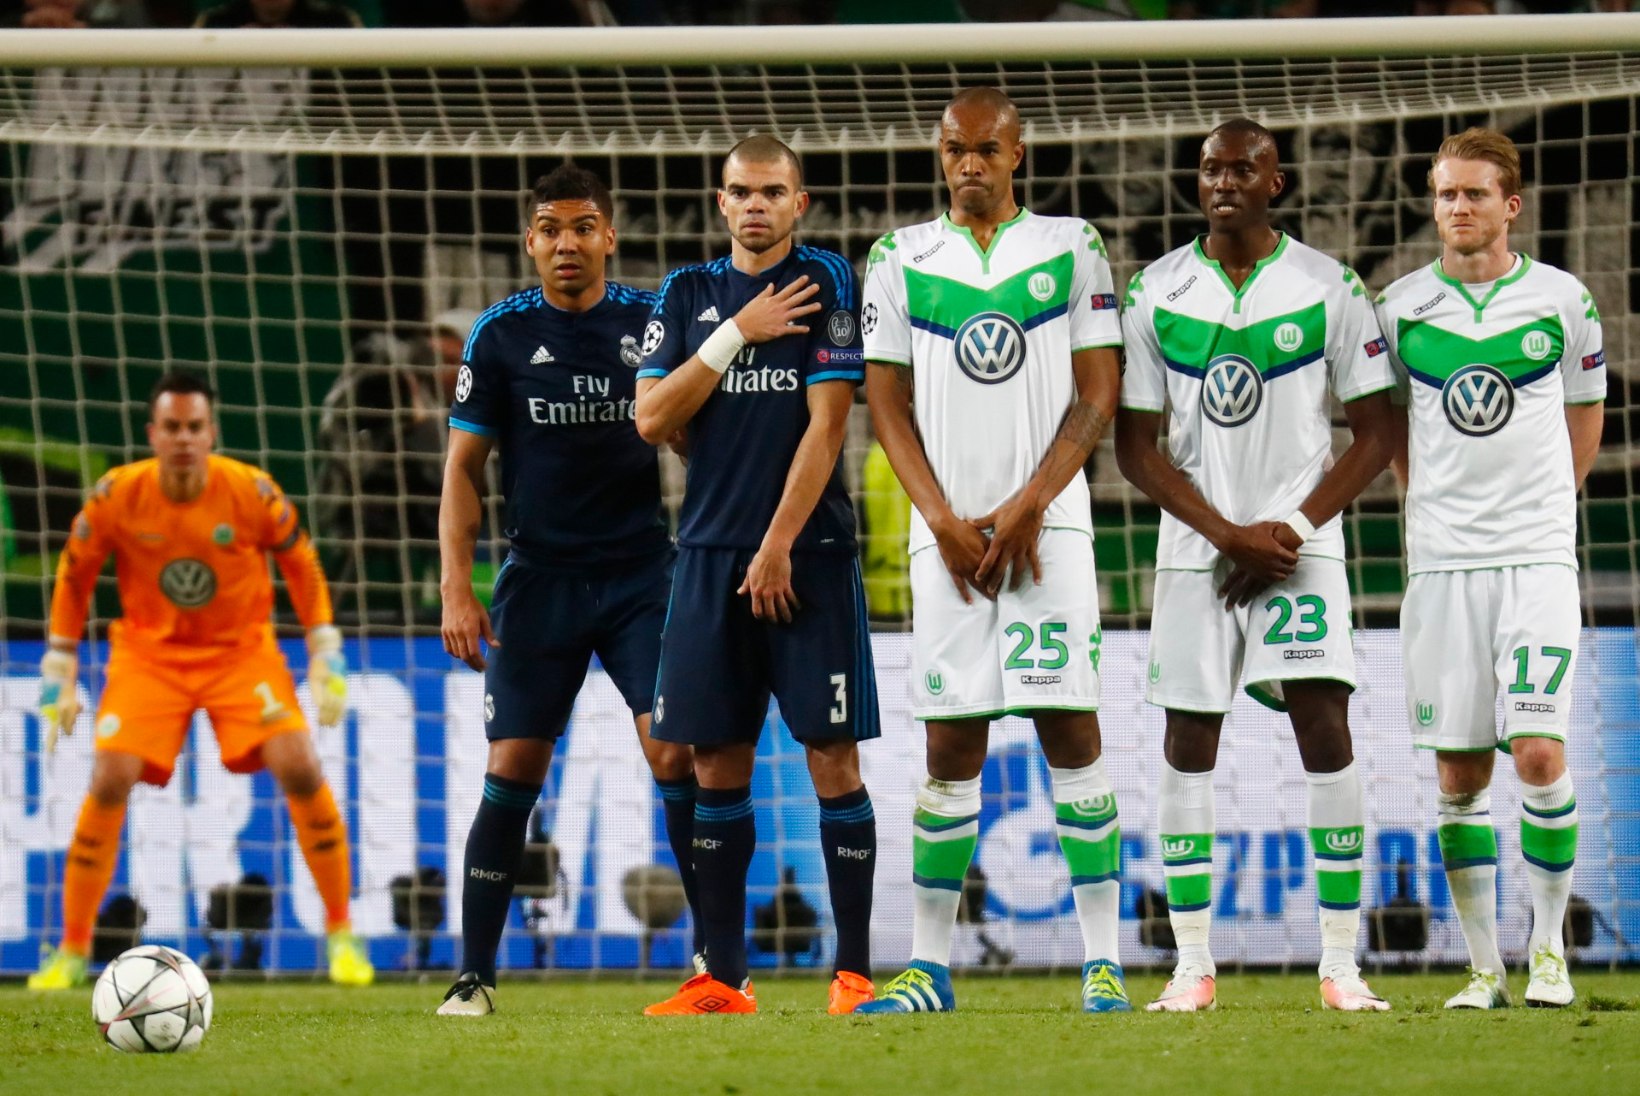 GALERII | ERAKORDNE ÕHTU: Wolfsburg šokeeris Euroopat, rikkurklubid tegid teineteisele kingitusi